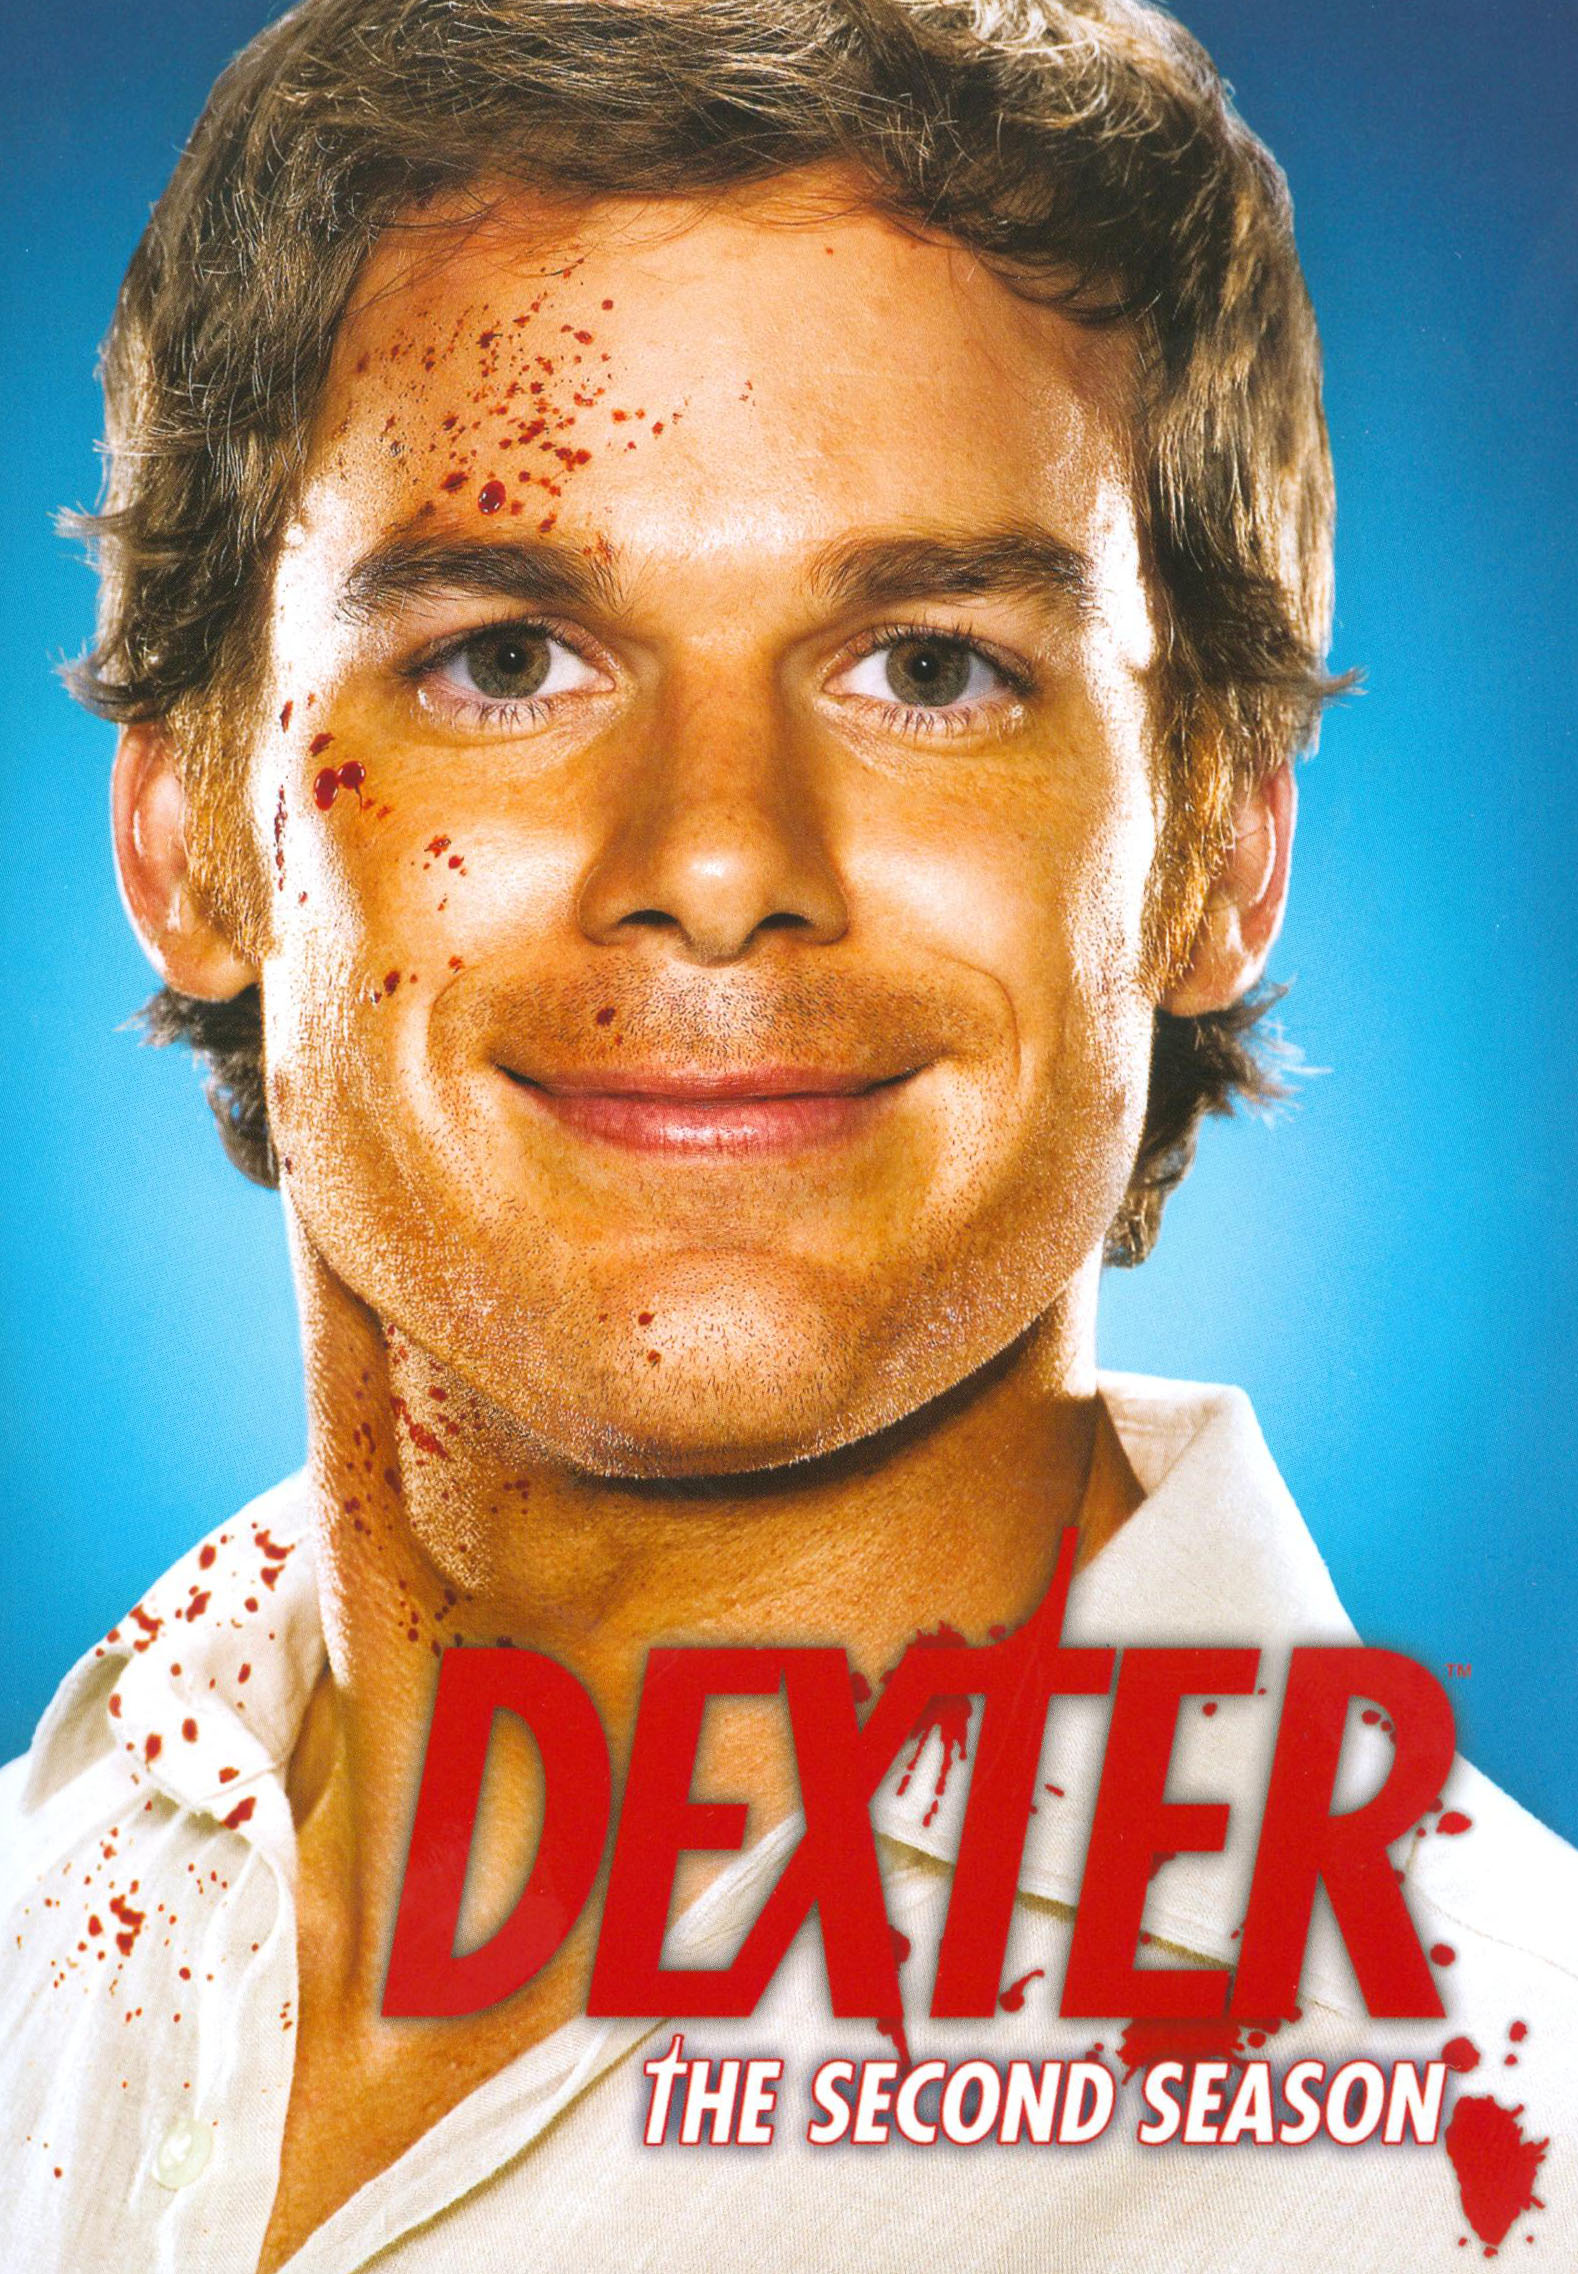 Dexter: The Second Season [4 Discs] - Best Buy